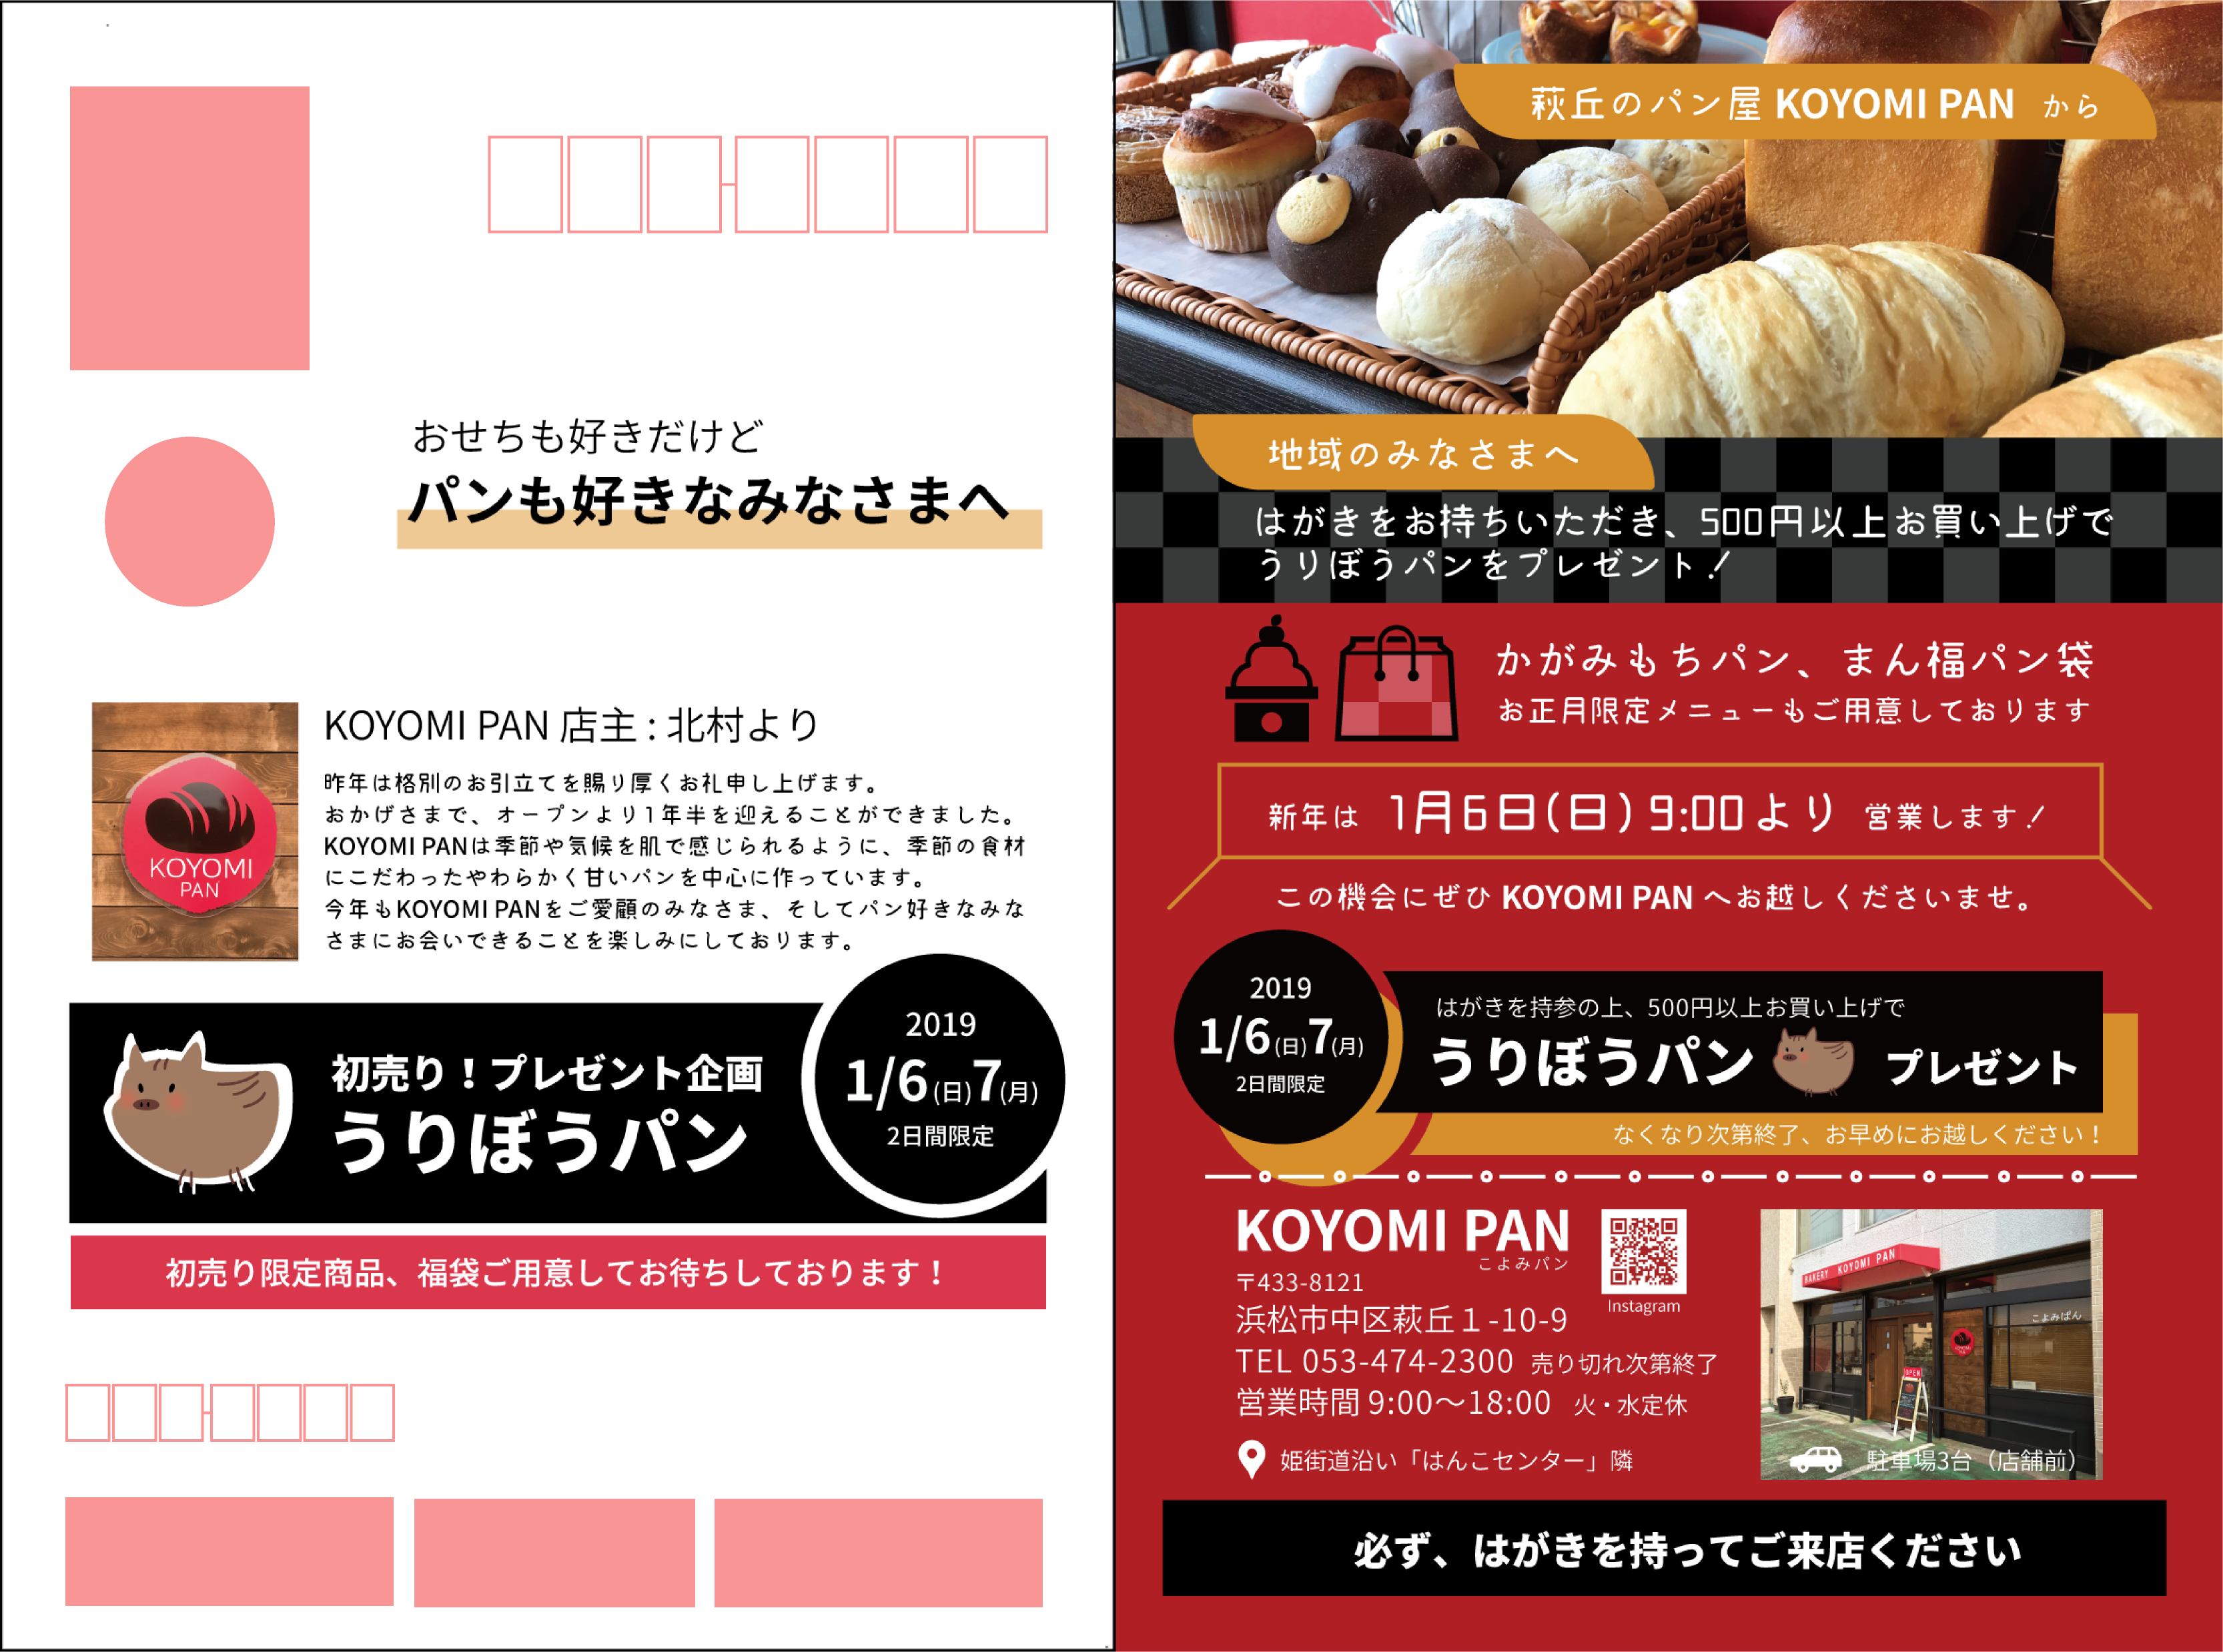 【デザイン】KOYOMI PAN様年賀ダイレクトメール